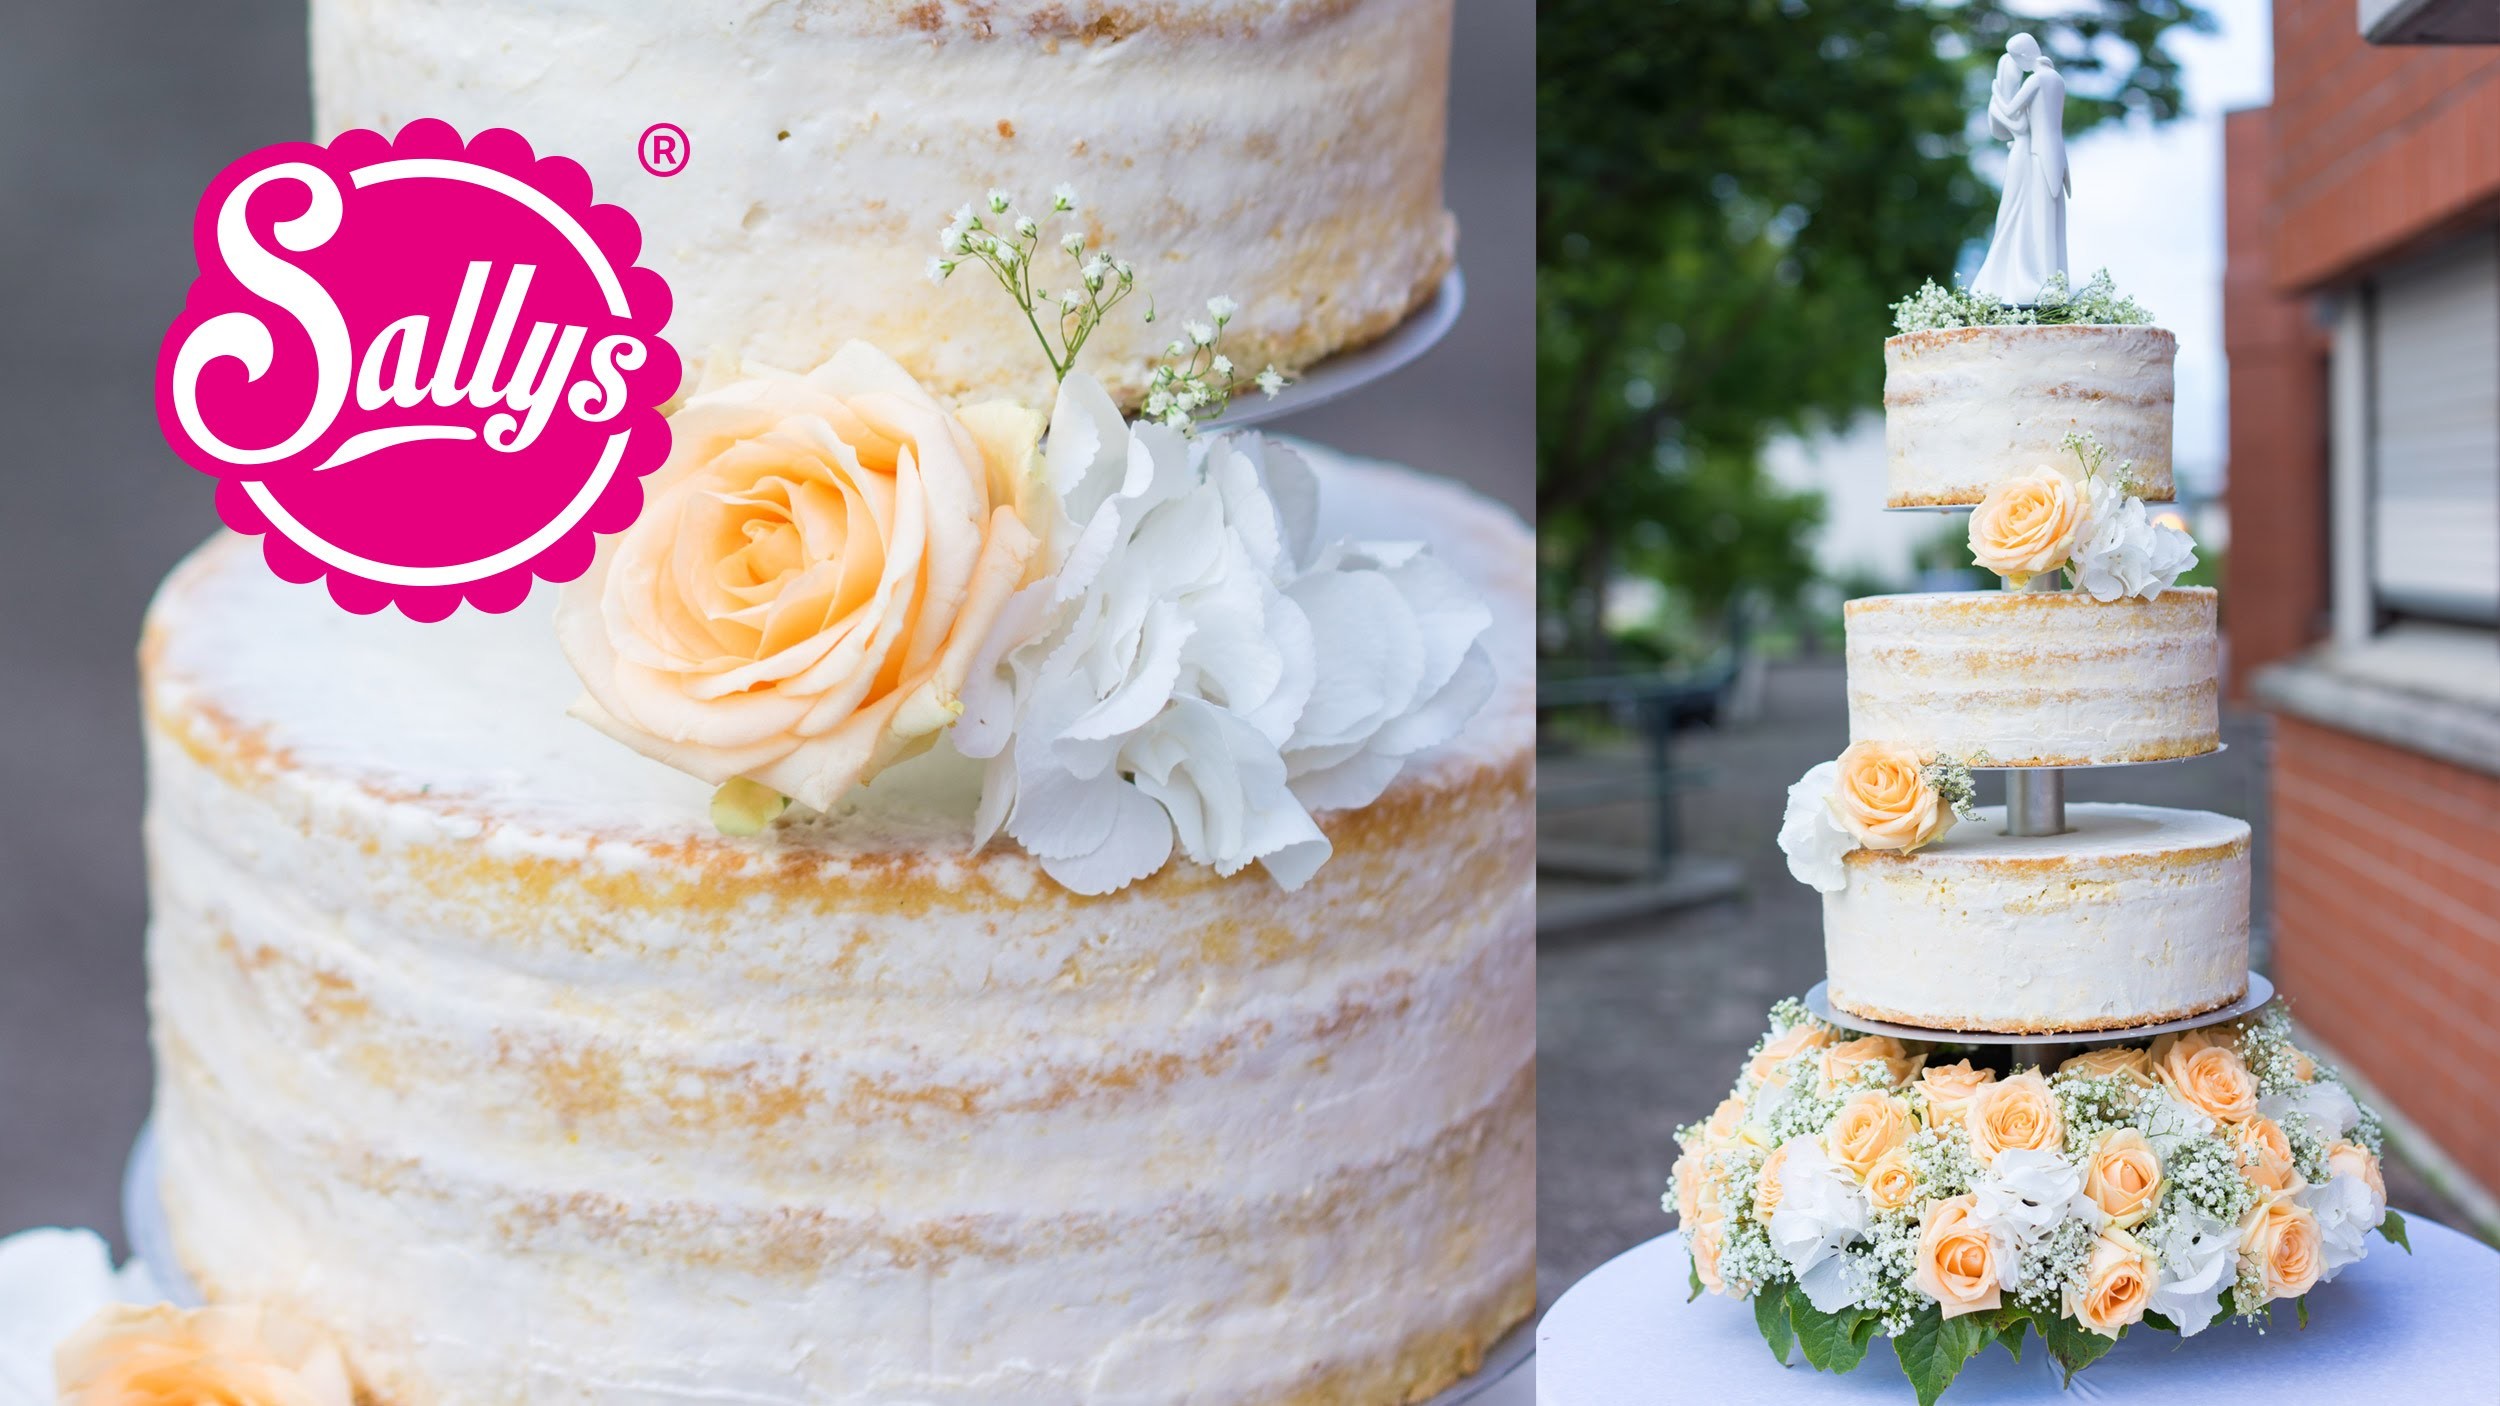 Hochzeitstorte dreistöckig. naked Cake. Eistorte mit Pfirsich-Mango-Parfait. Wedding Cake